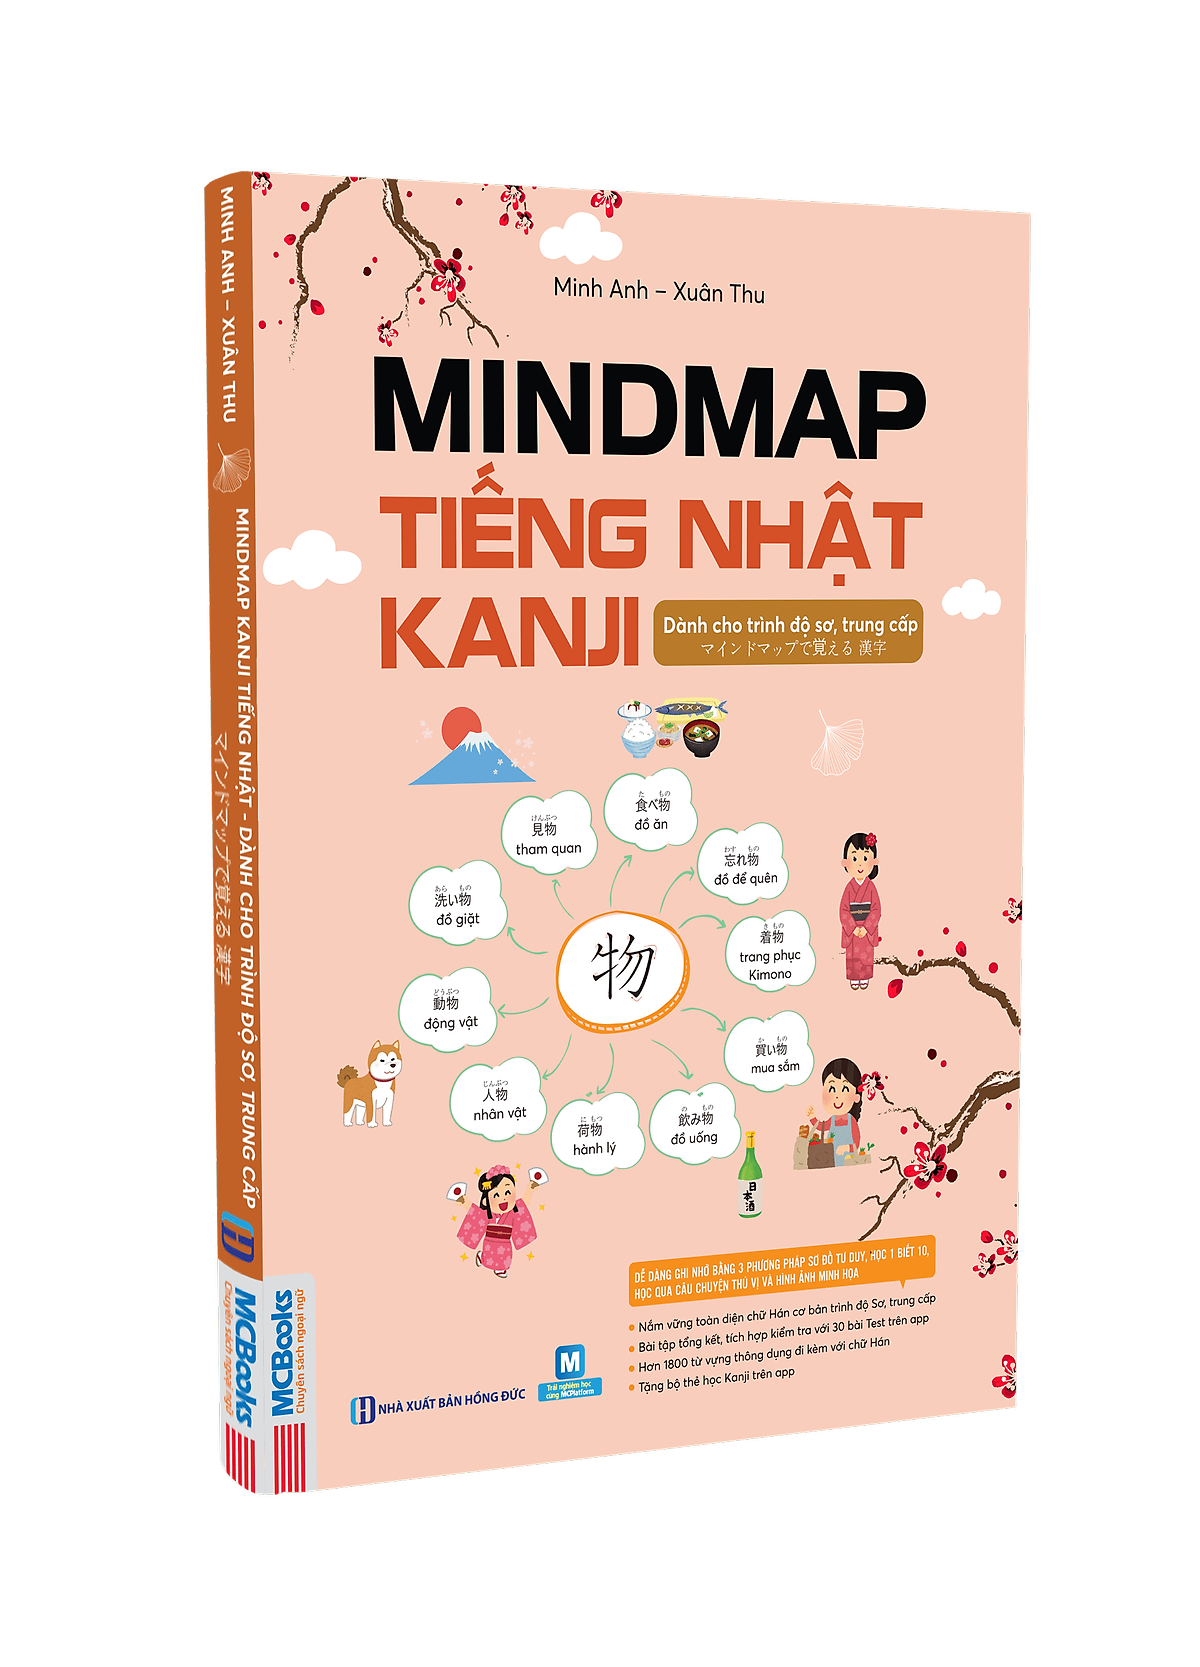 Mindmap Kanji: Mindmap Kanji giúp bạn dễ dàng học và nhớ ký tự Kanji như chơi. Với Mindmap Kanji, bạn có thể tự mình tổ chức chủ đề và các ký tự liên quan, giúp bạn học và tiếp thu hiệu quả hơn.